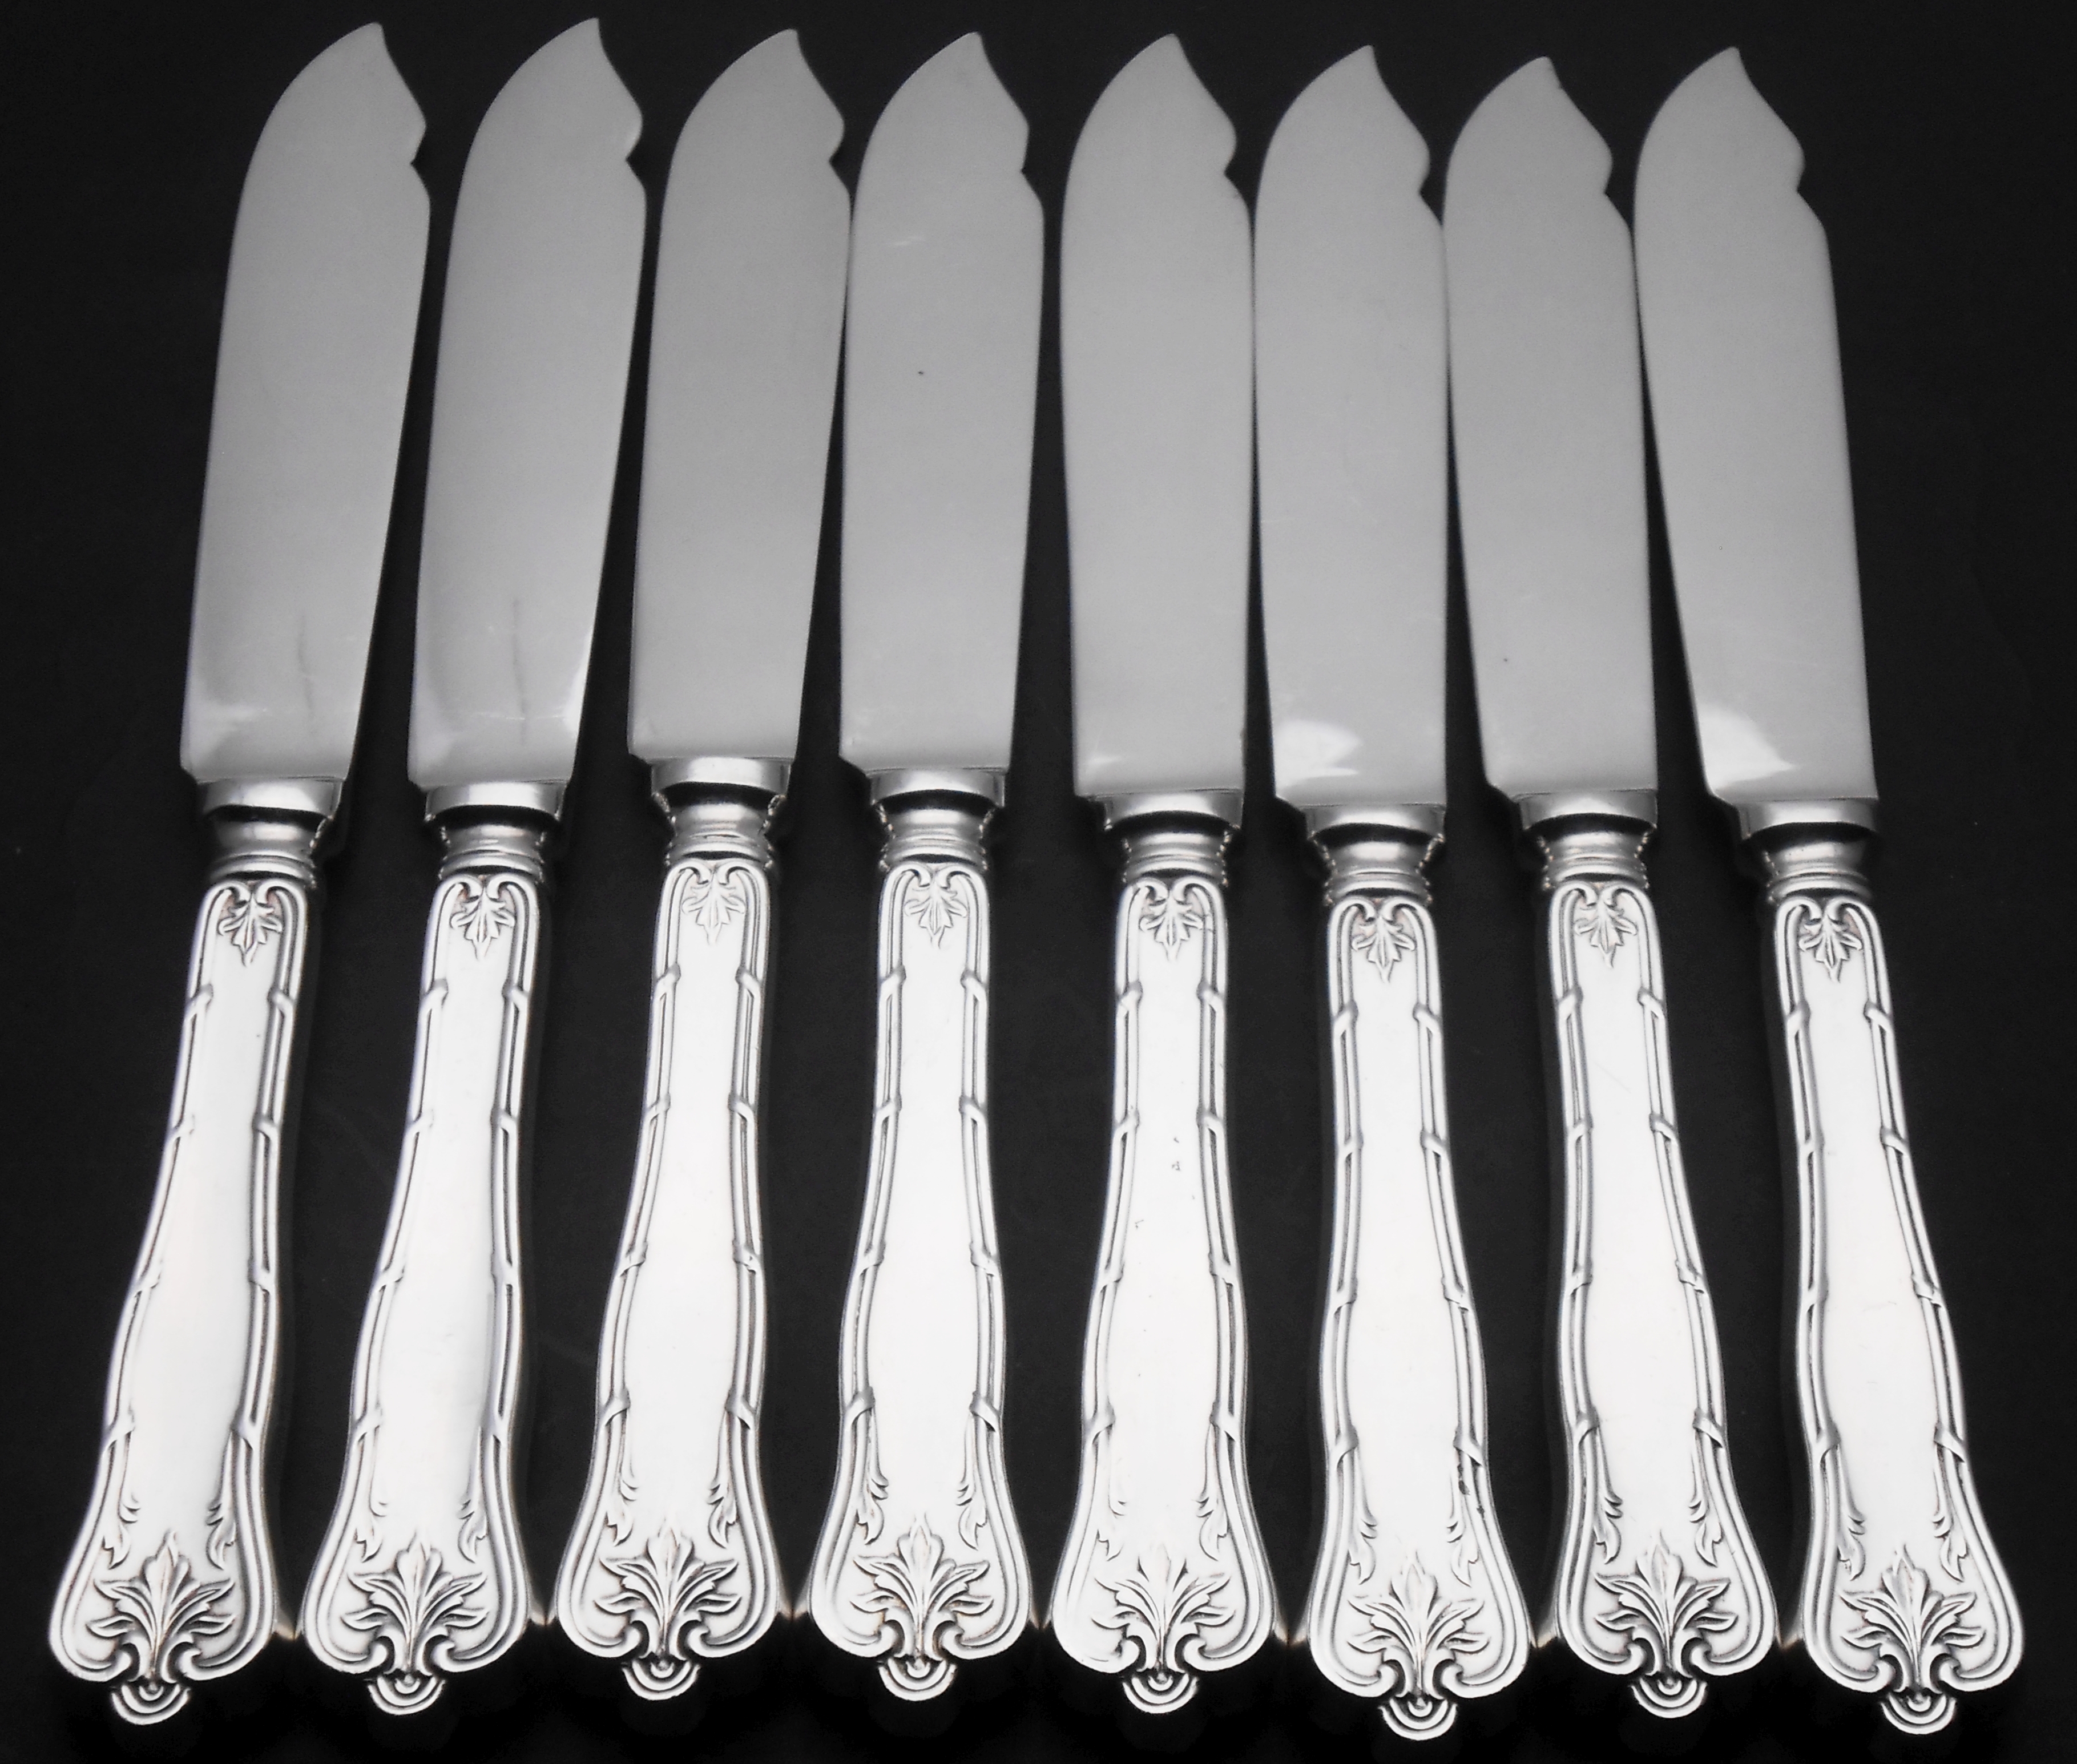 Louis XVI pattern cutlery / flatware